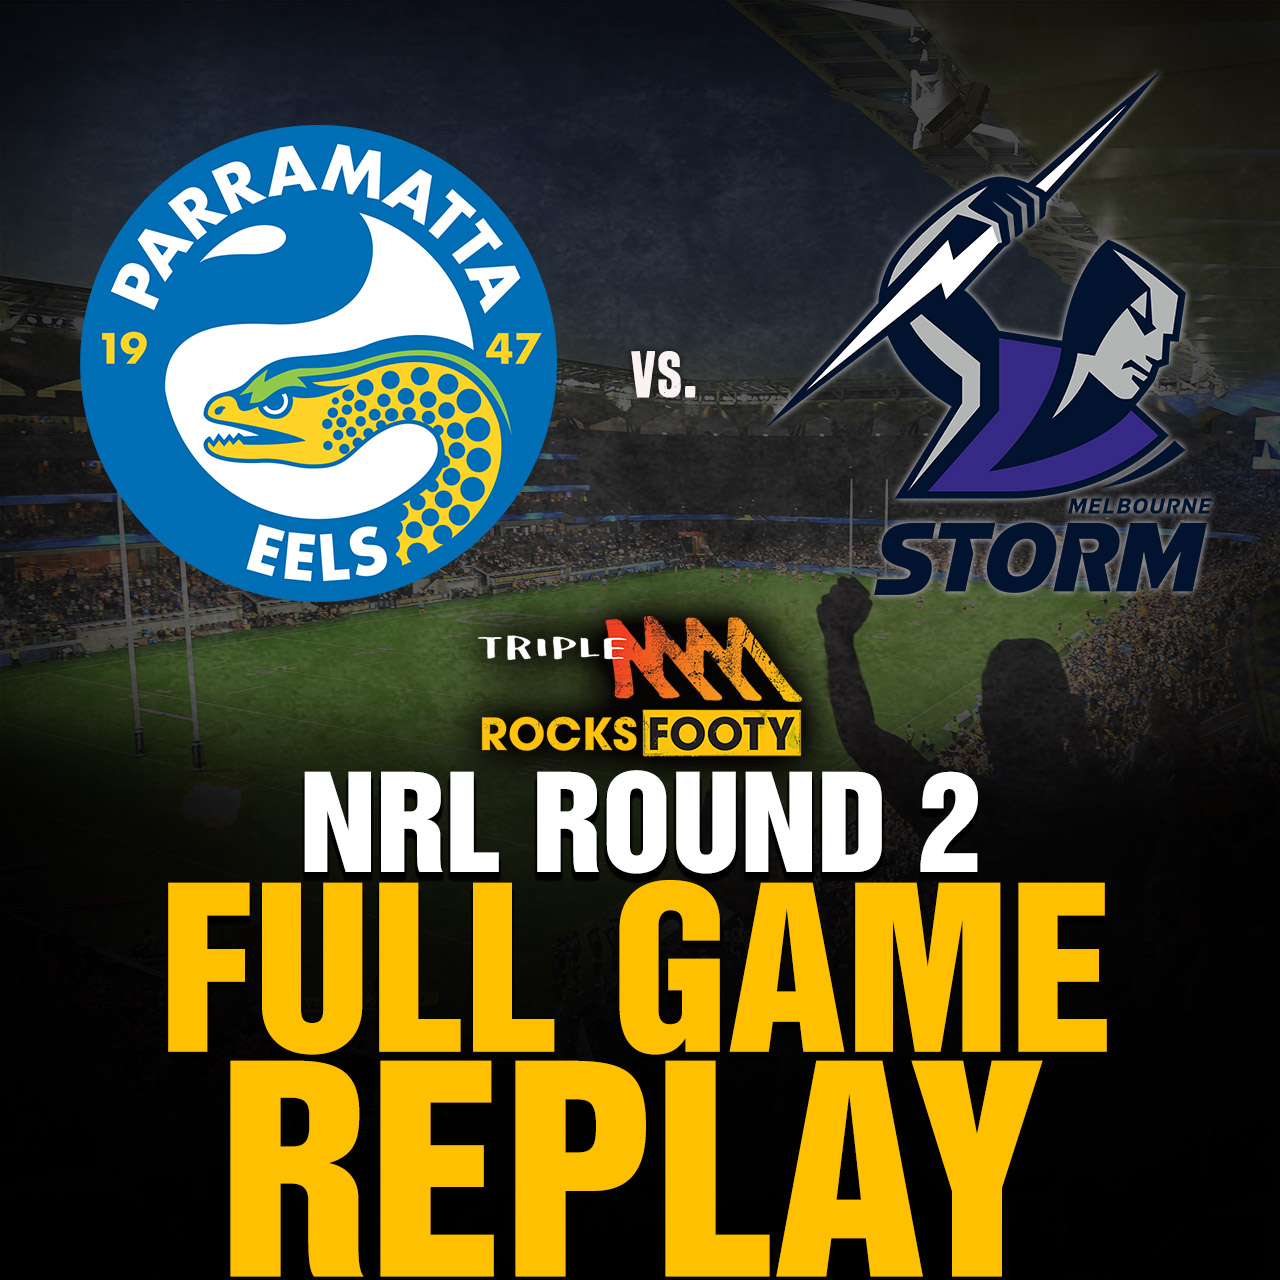 FULL GAME REPLAY | Parramatta Eels vs. Melbourne Storm